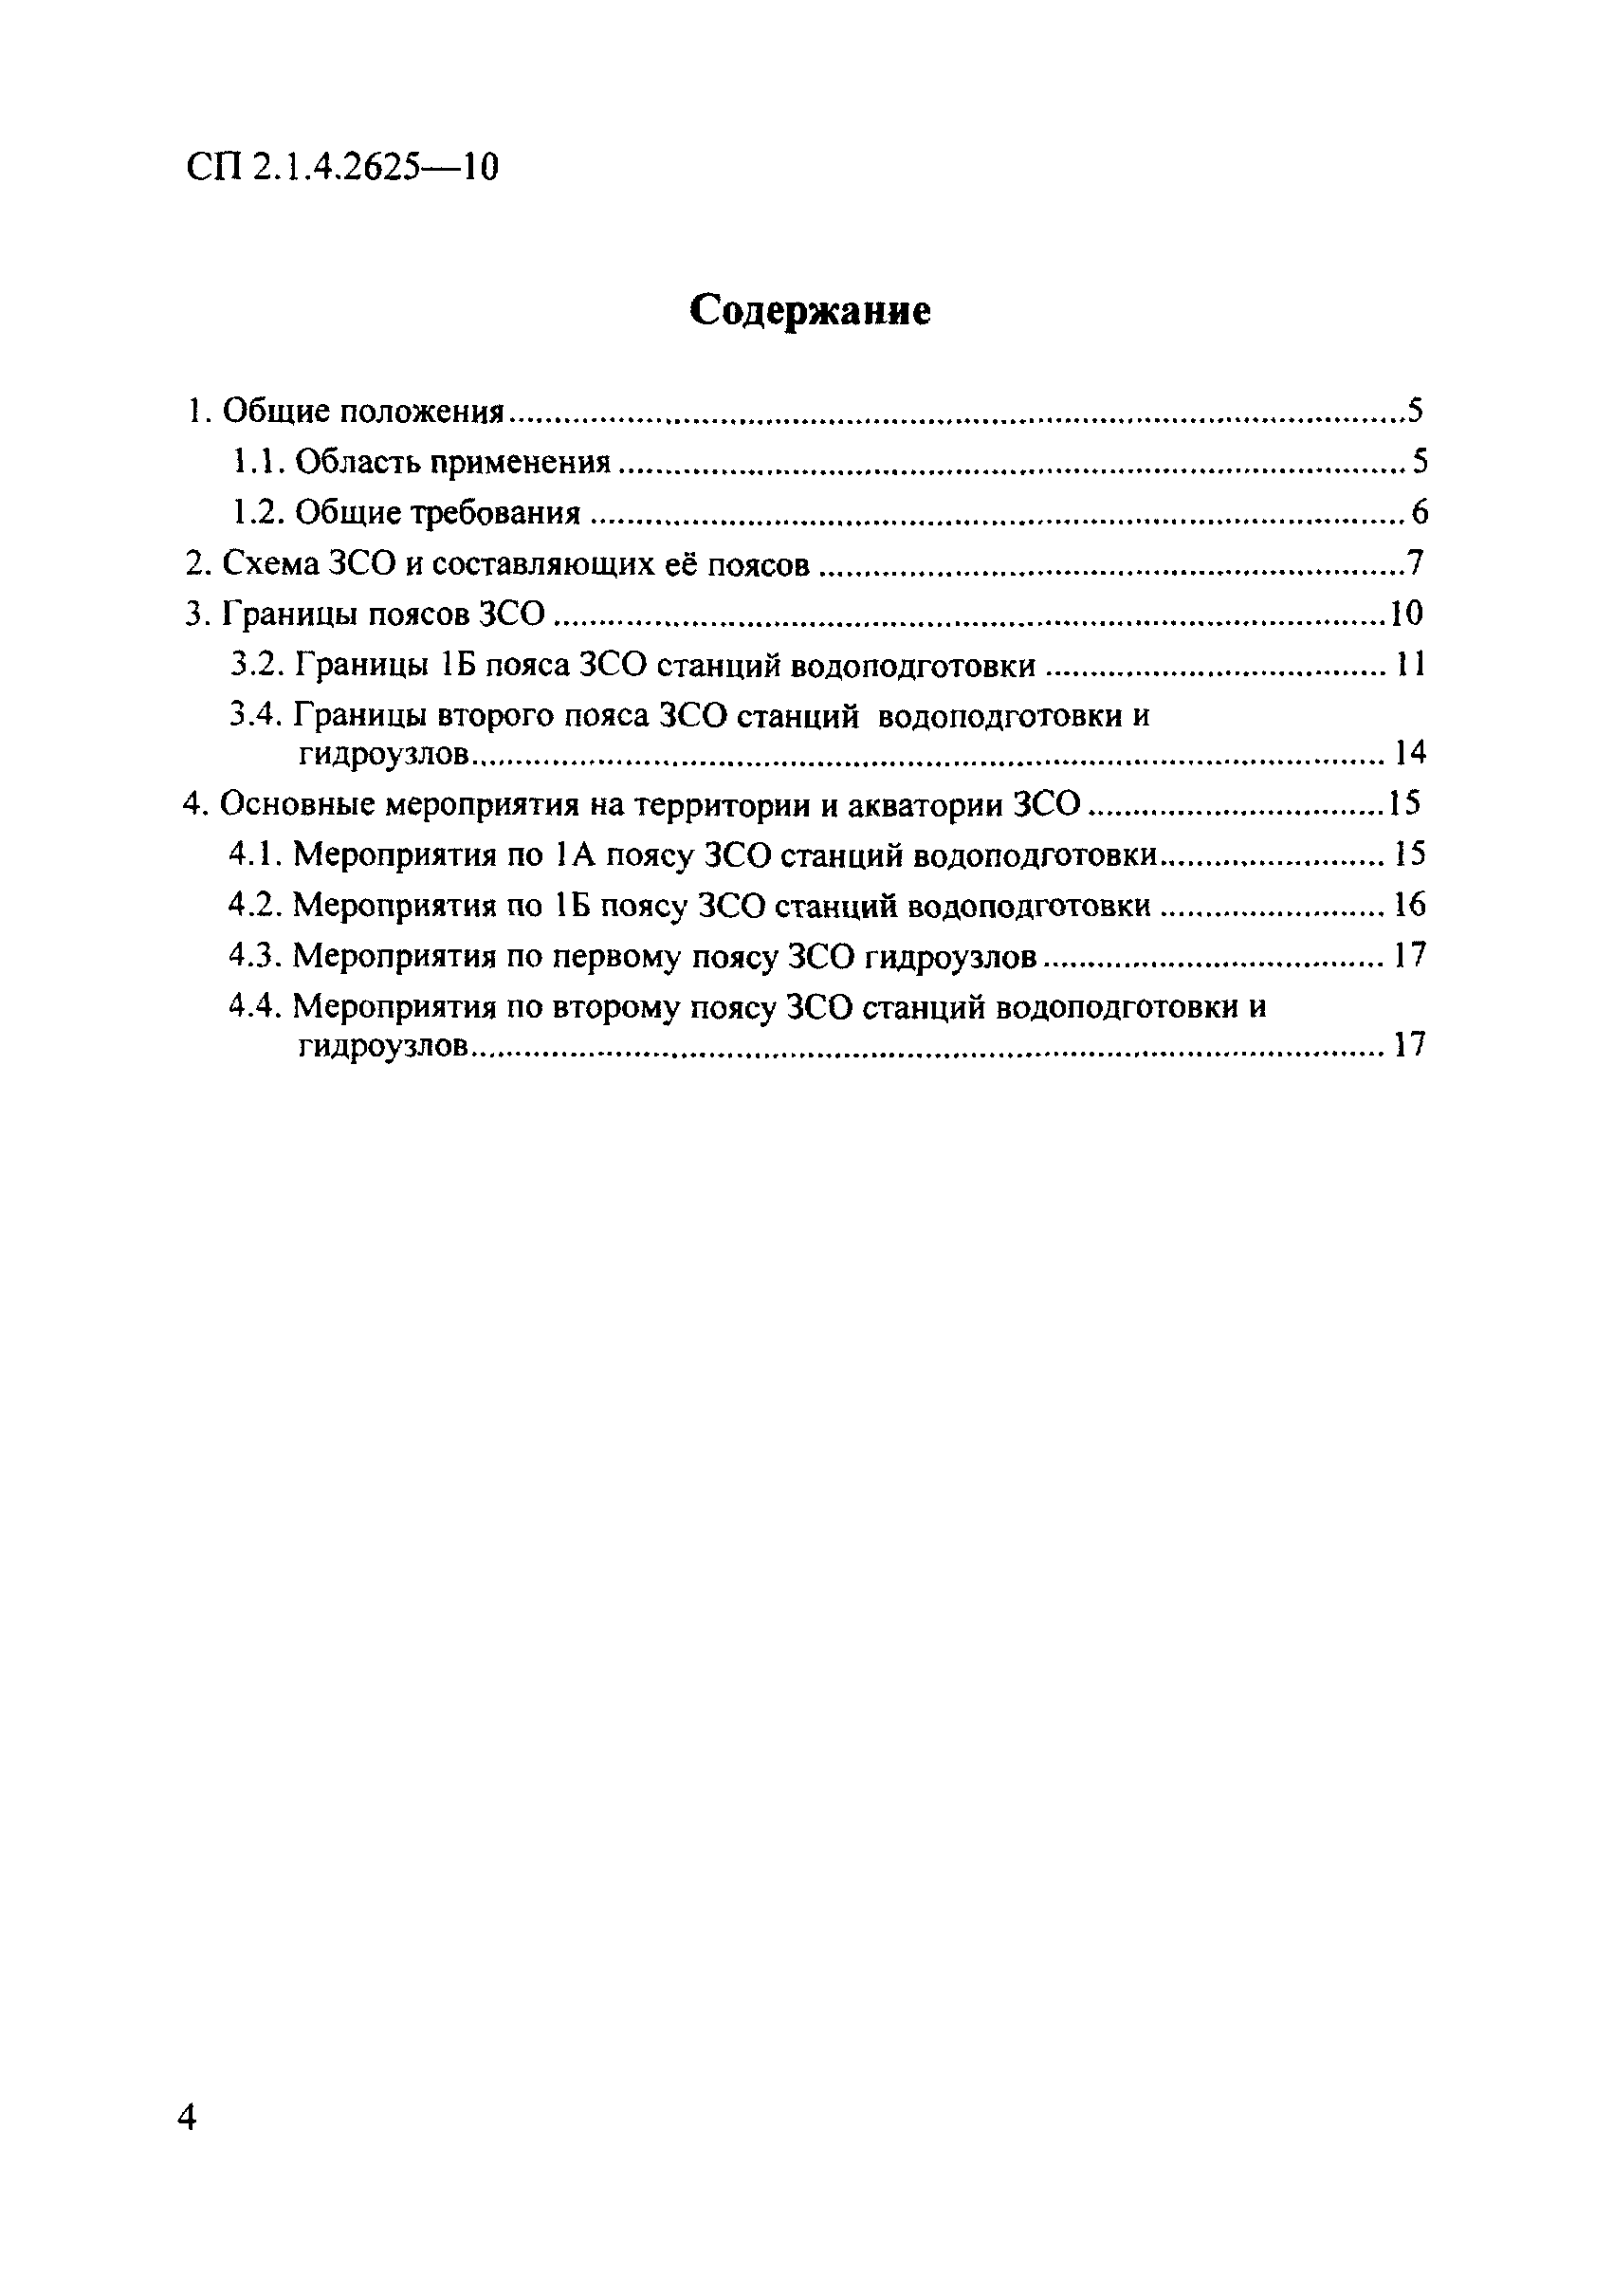 СП 2.1.4.2625-10